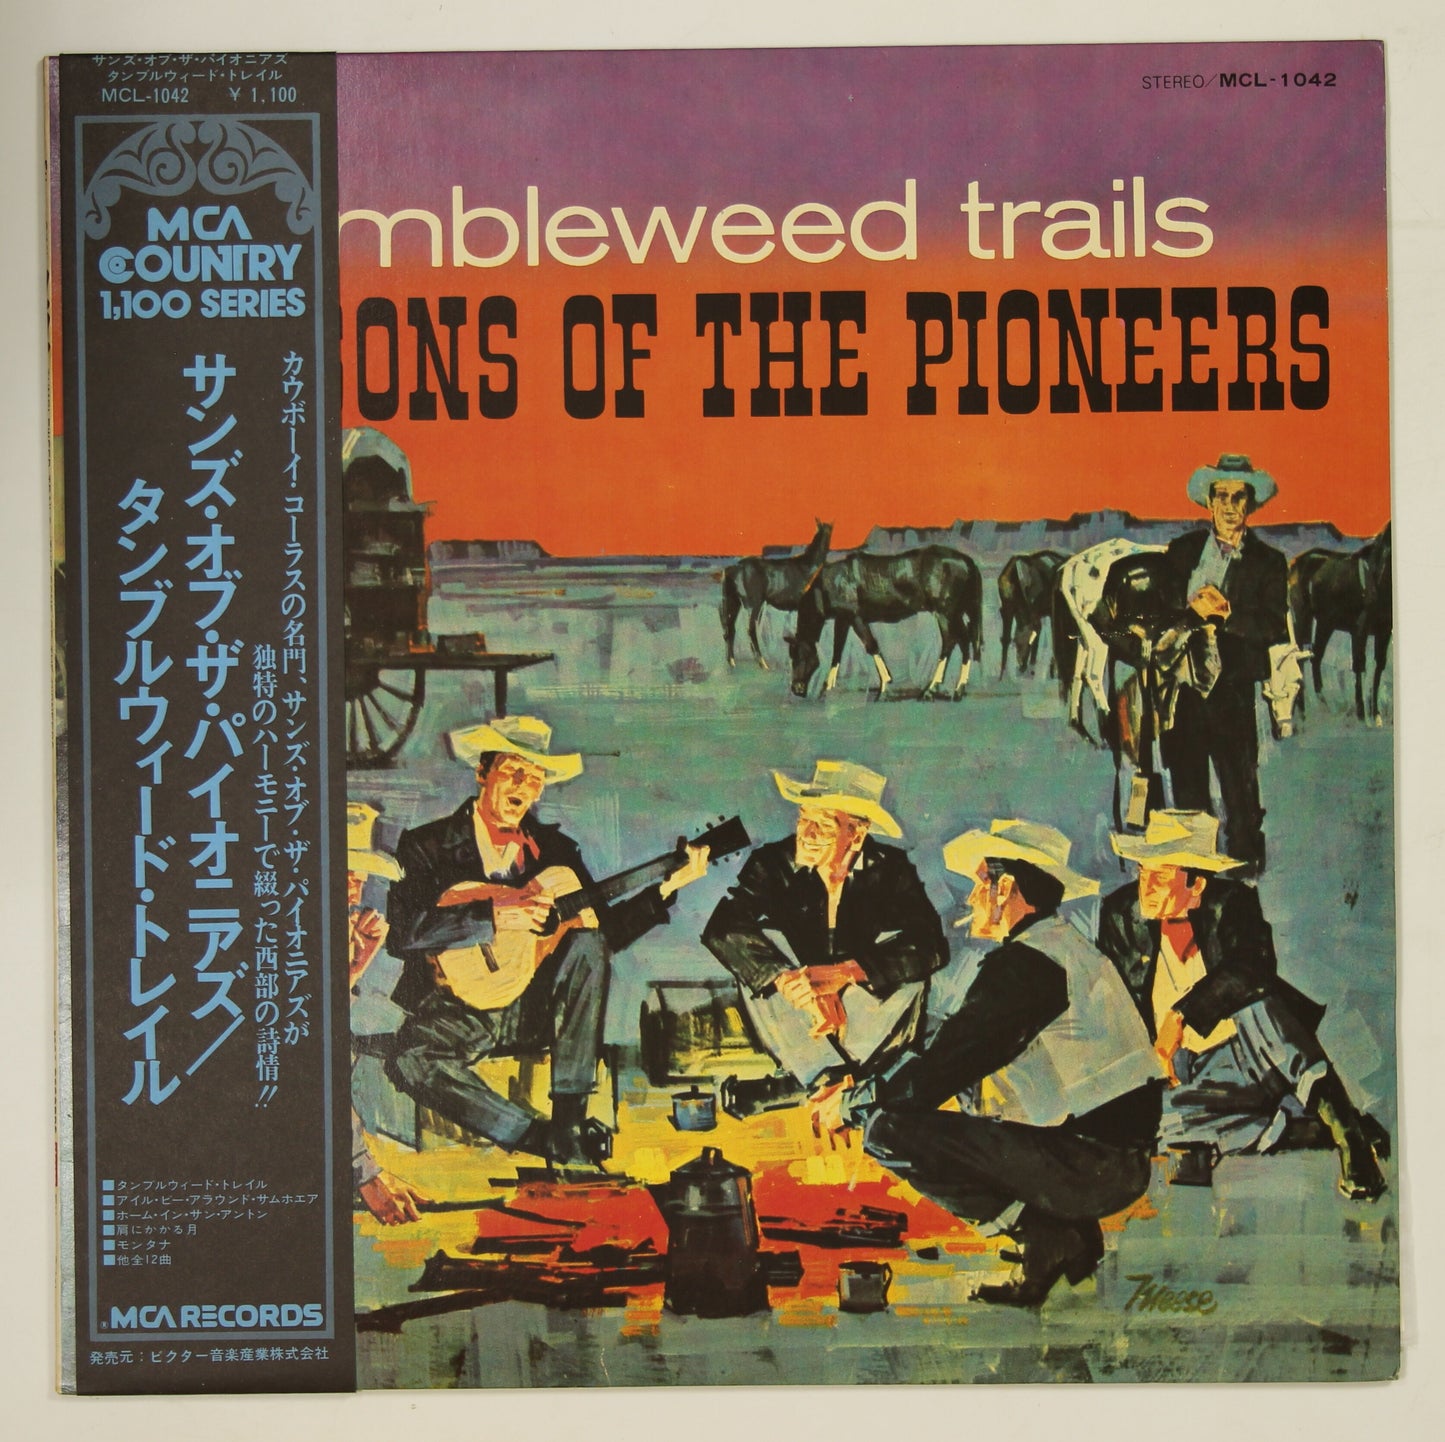 サンズ・オブ・ザ・パイオニアズ SONS OF THE PIONEERS / タンブルウィード・トレイル TUMBLEWEED TRAILS